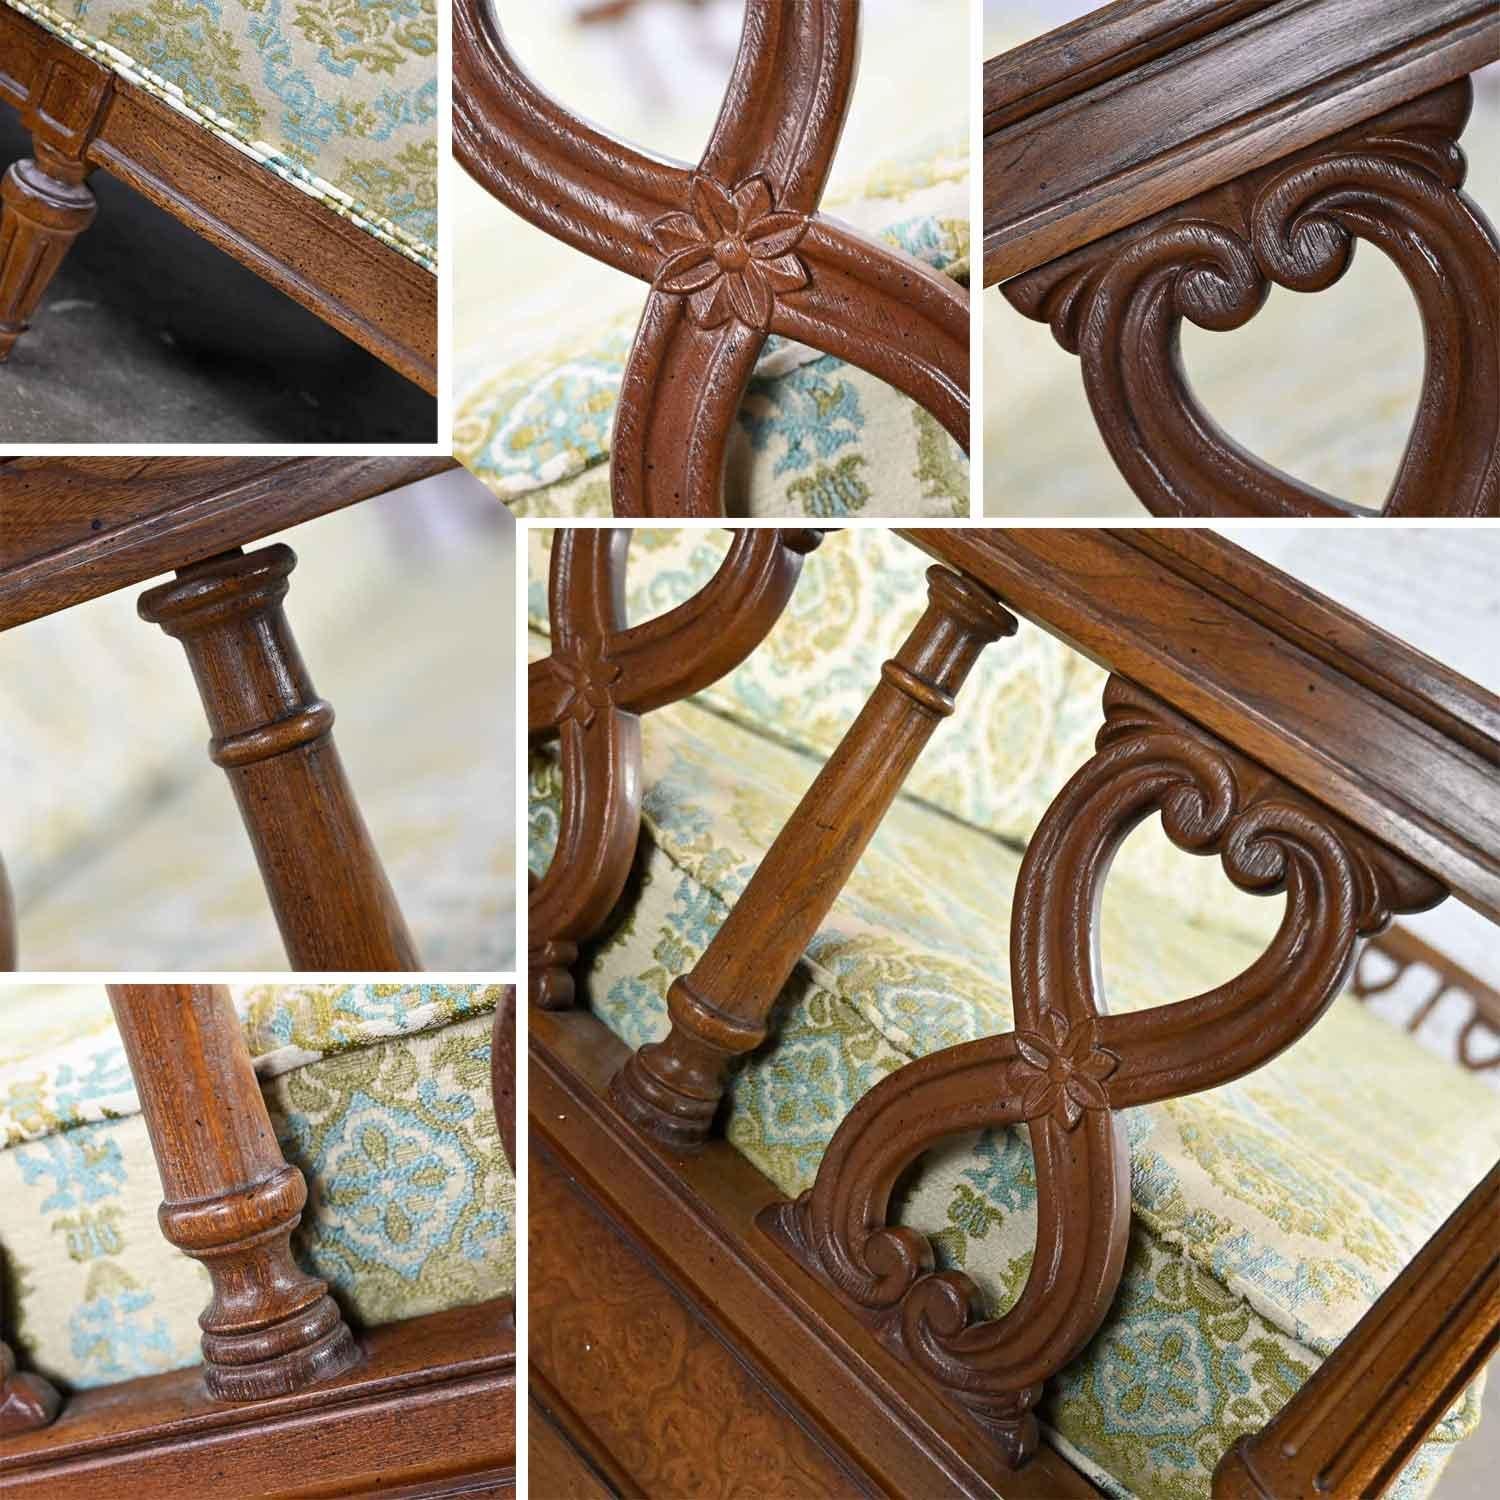 Vintage Mediterranean Spanish Revival Style Sofa Wood Details by American Furn 7